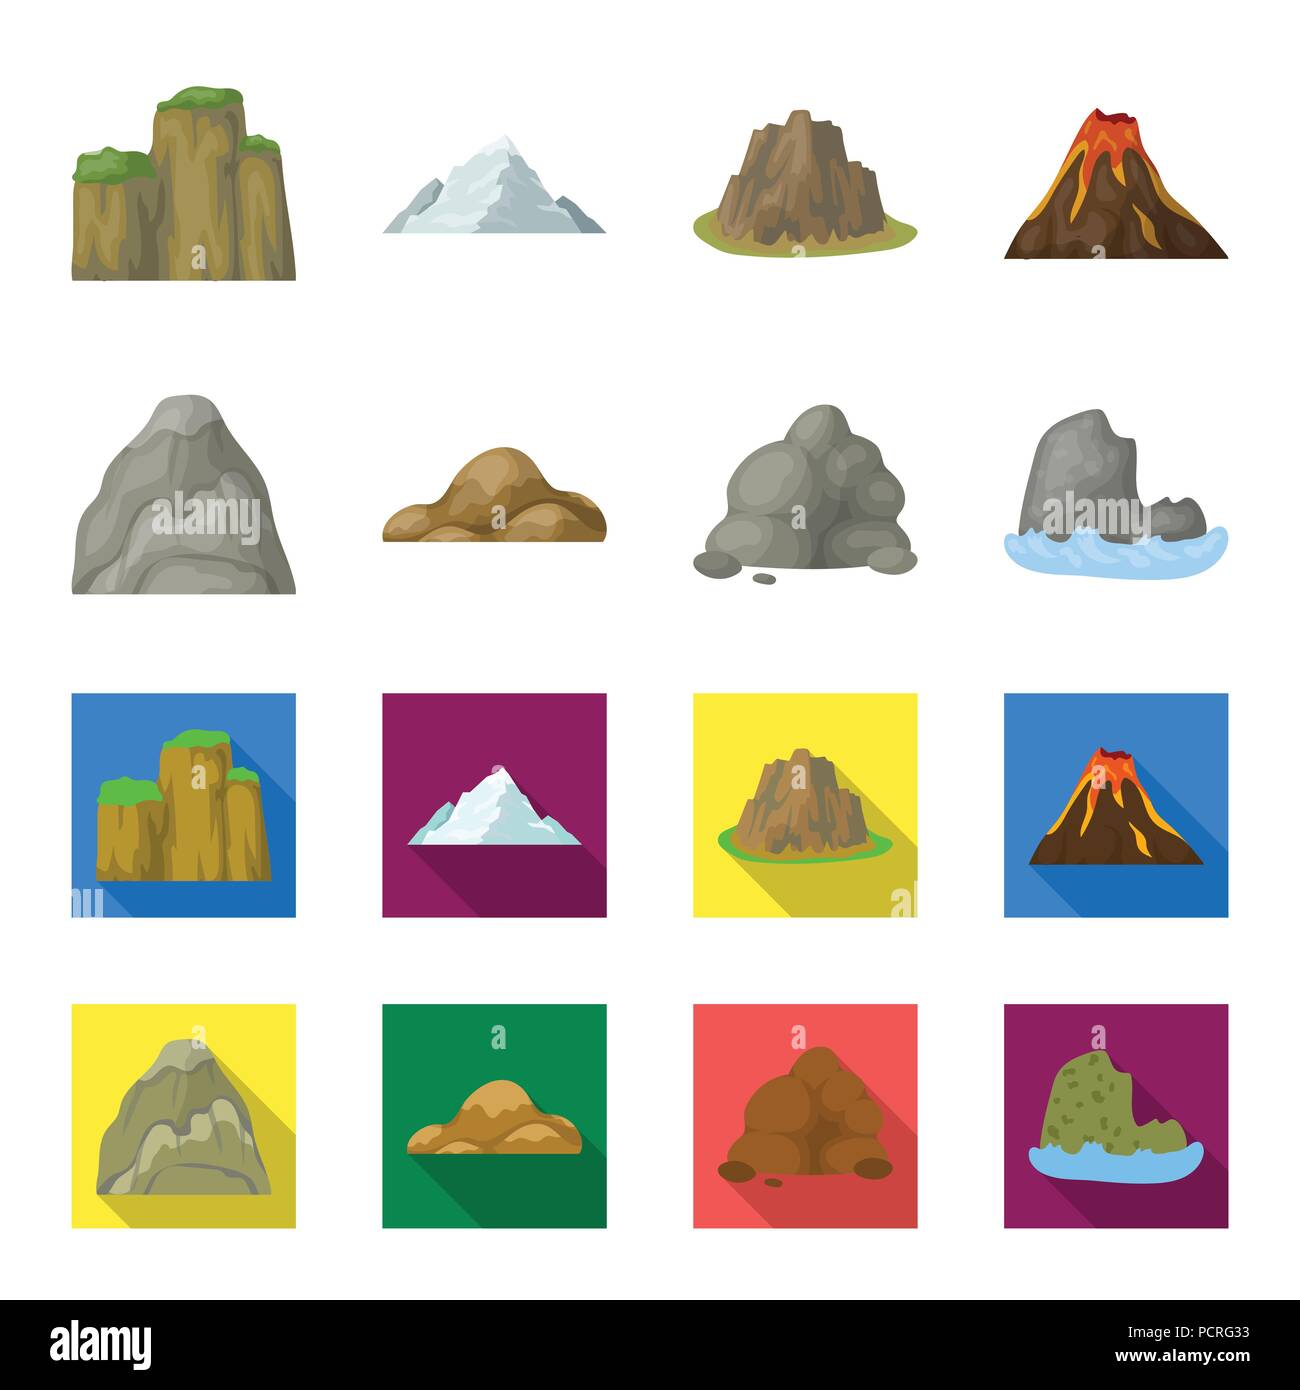 Geröll, eine abgerundete Berge, Felsen im Meer. Verschiedene berge Sammlung Icons im Cartoon, flacher Stil vektor Symbol lieferbar Abbildung. Stock Vektor